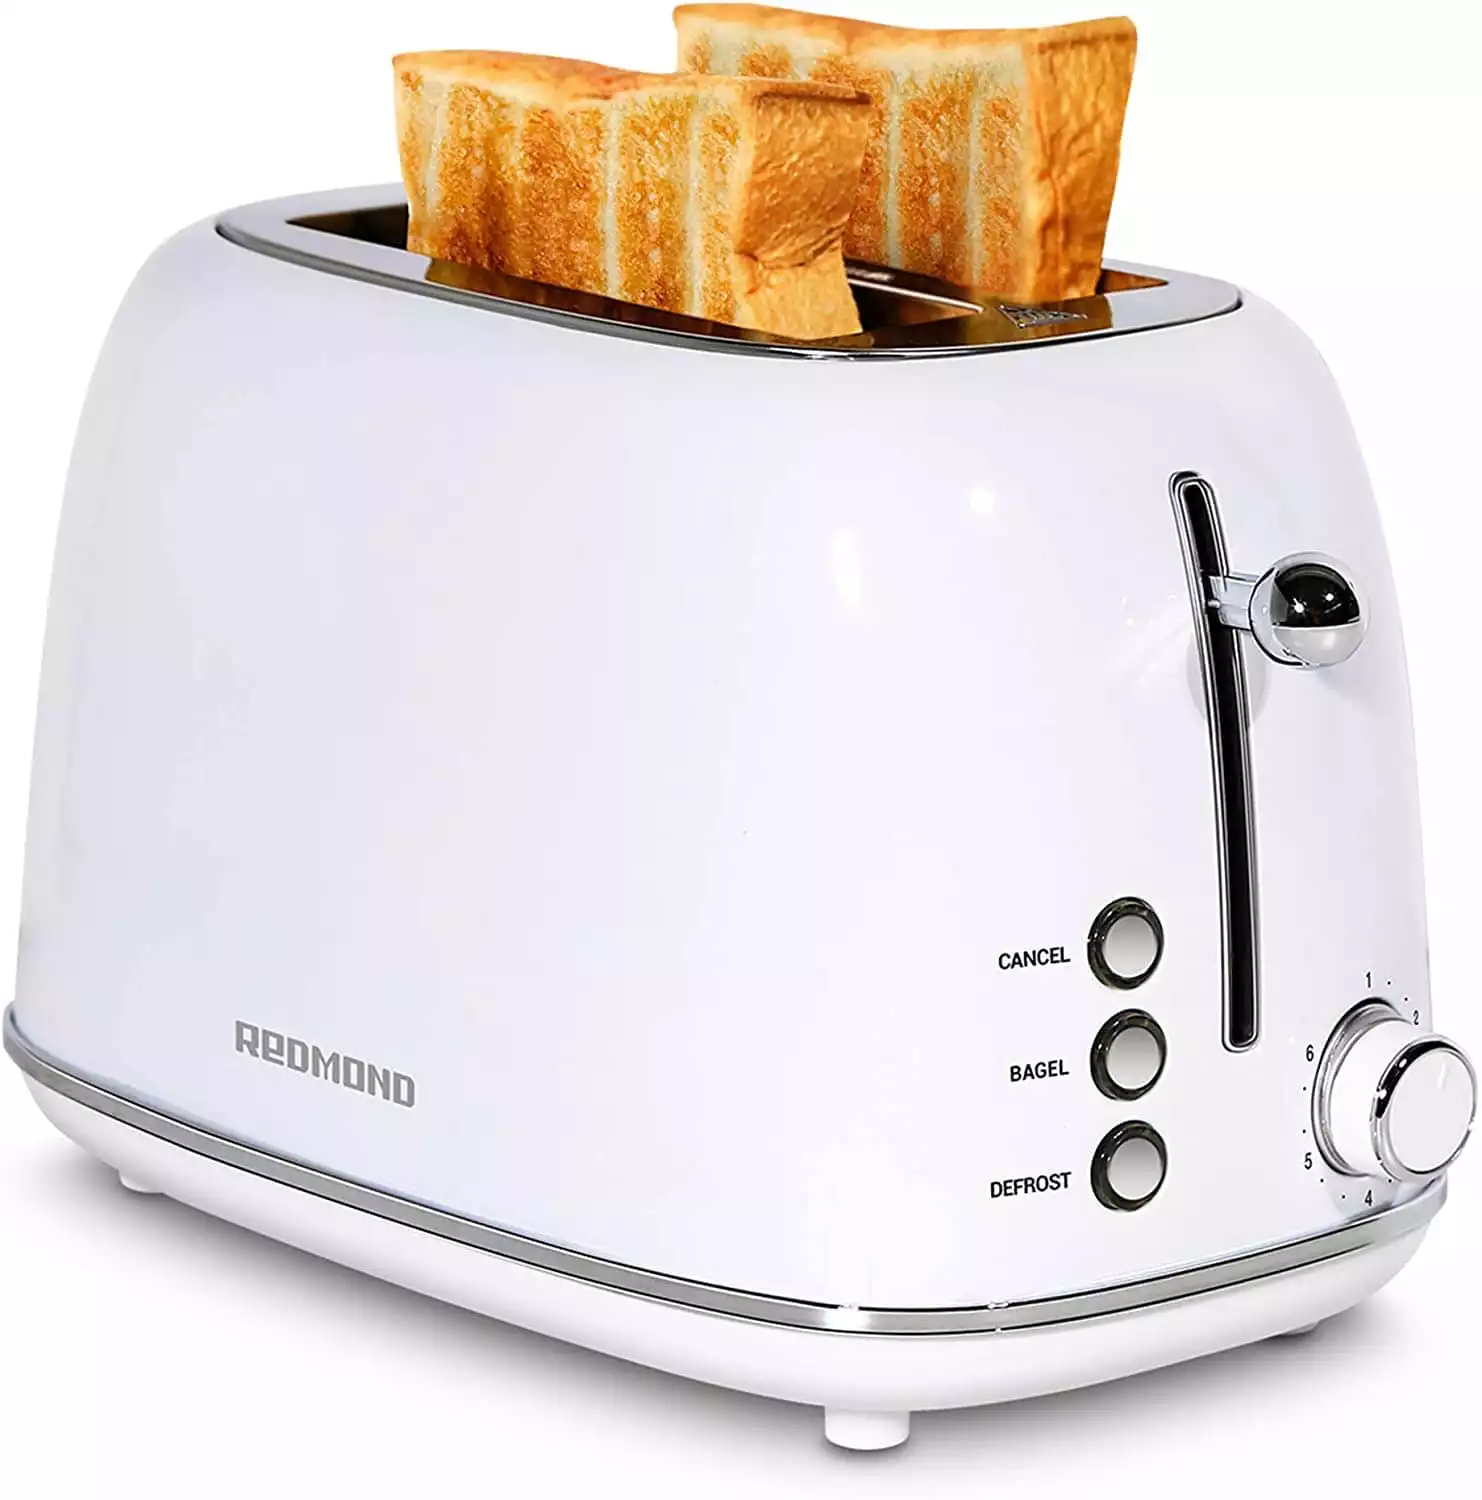 REDMOND 2 Slice Toaster Retro Stainless Steel Toaster